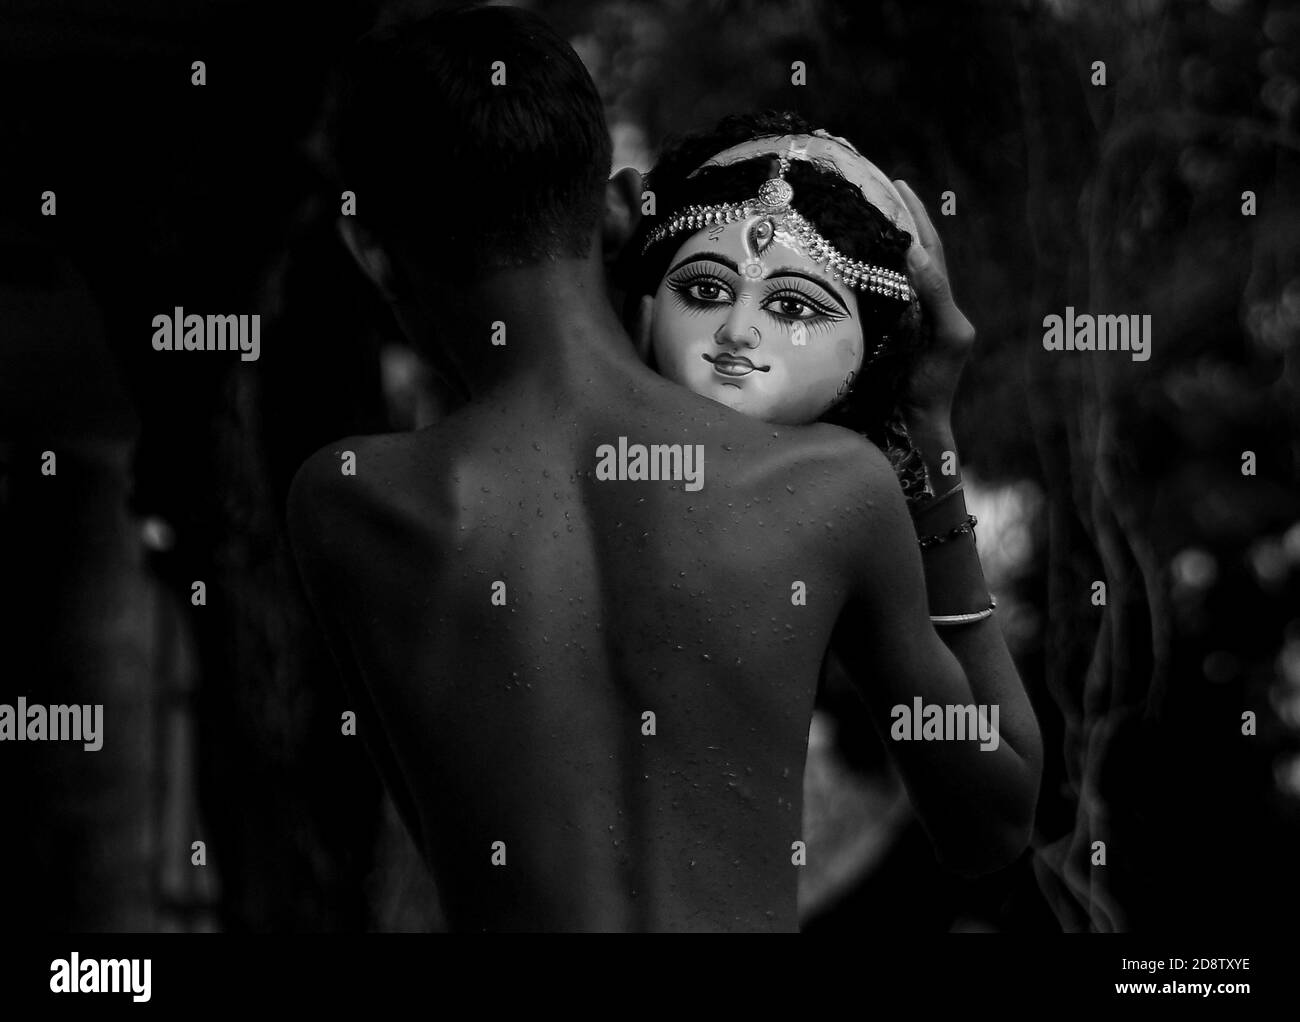 Ein Kind hält den Kopf eines Idols der Göttin Durga während einer Immersionszeremonie für Dashami, dem letzten Tag des Durga Puja Festivals. Das Festival ist das größte religiöse Ereignis für bengalische Hindus. Hindus glauben, dass die Göttin Durga Macht und den Triumph des Guten über das Böse symbolisiert. Agartala, Tripura, Indien. Stockfoto